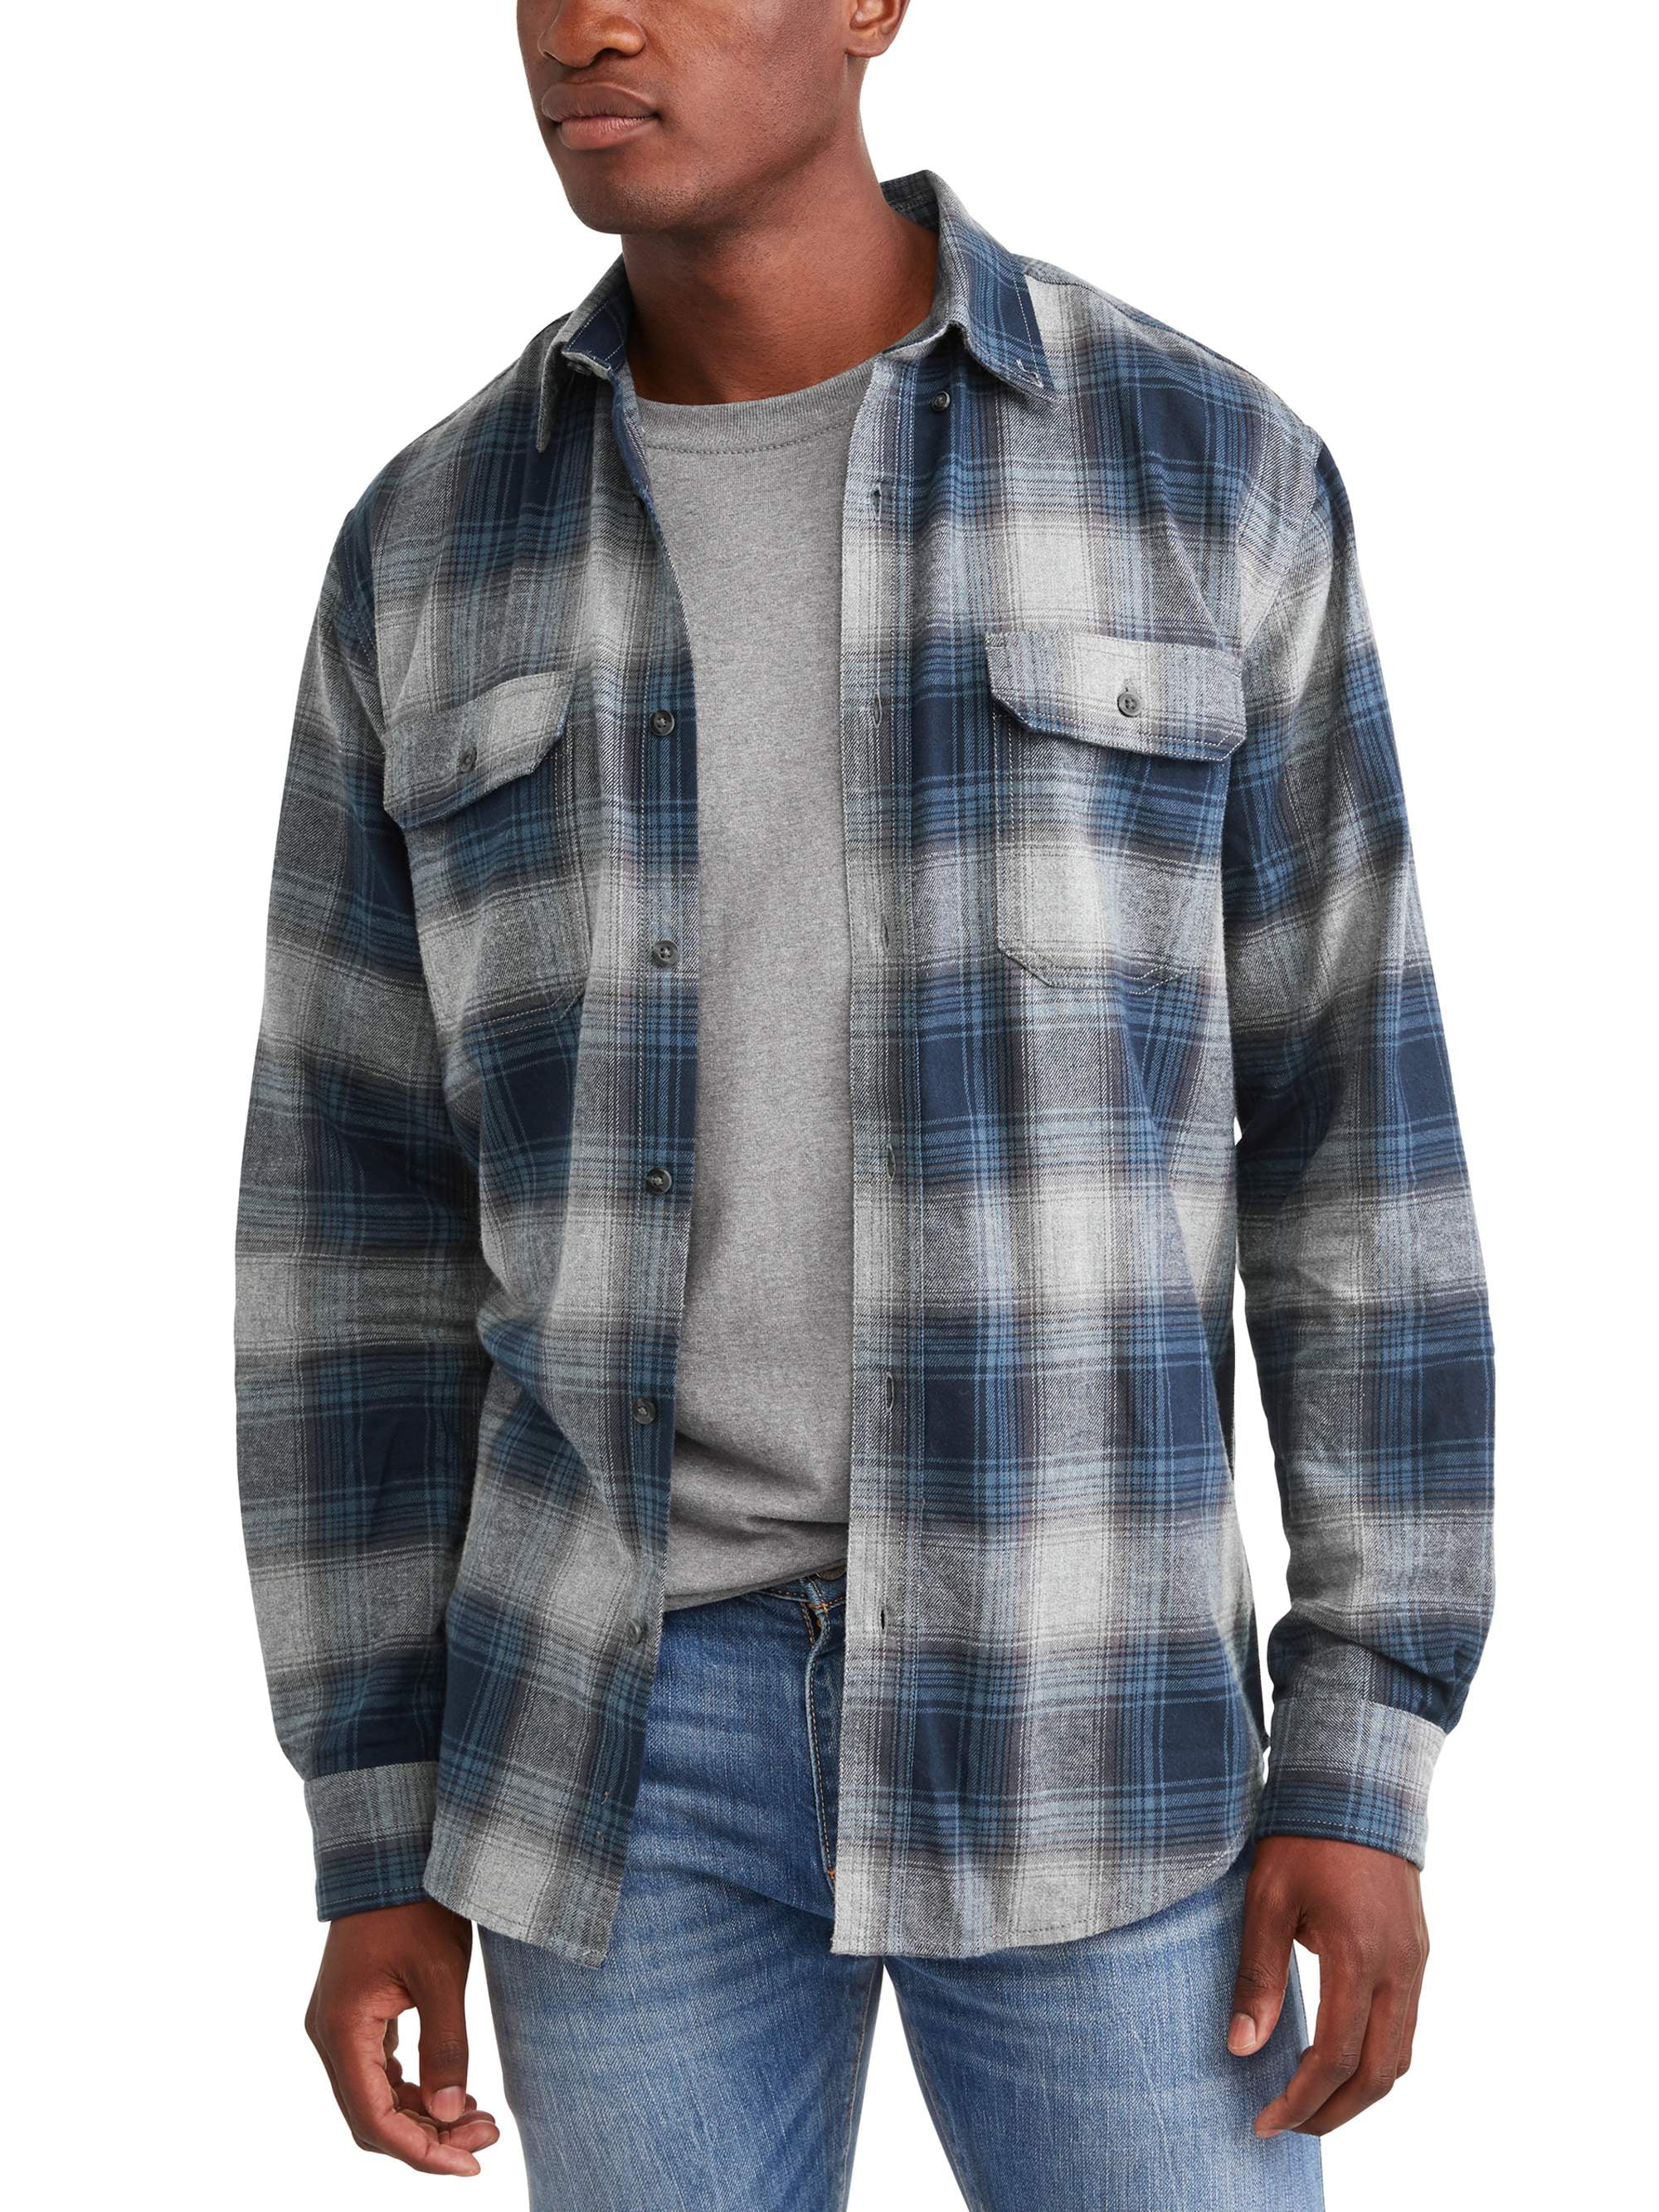 Men's Long Sleeve Flannel Shirt, Up To 5XL - Walmart.com